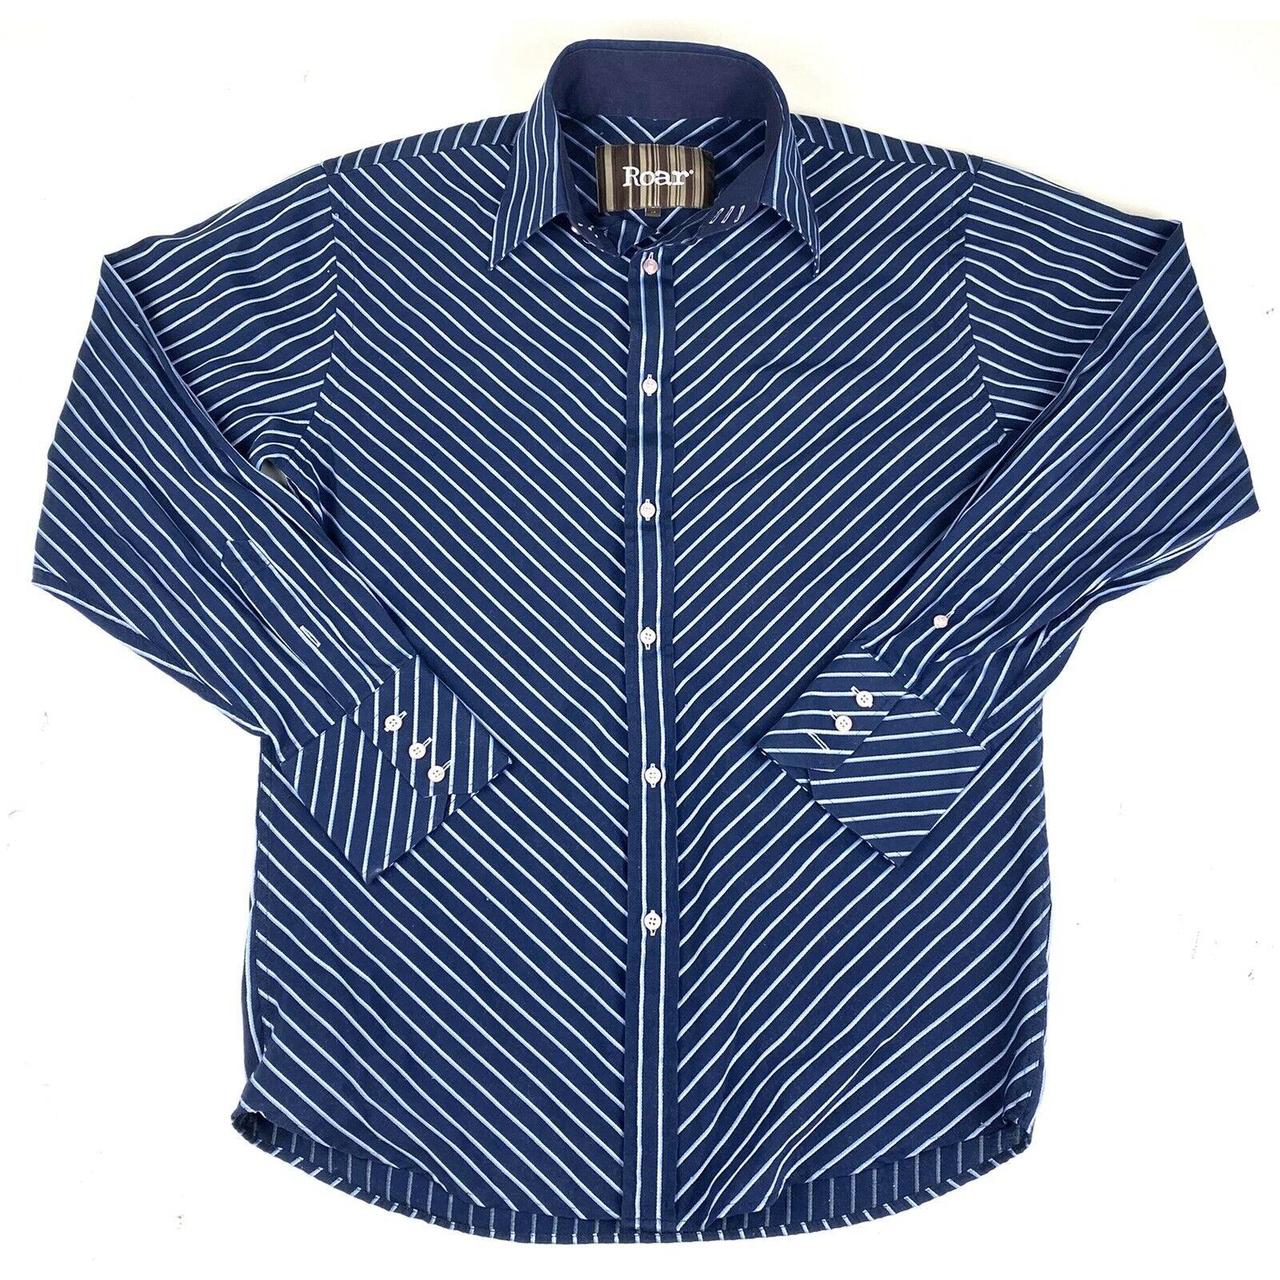 Roar Button Up Shirt Mens Medium Blue Striped Long... - Depop